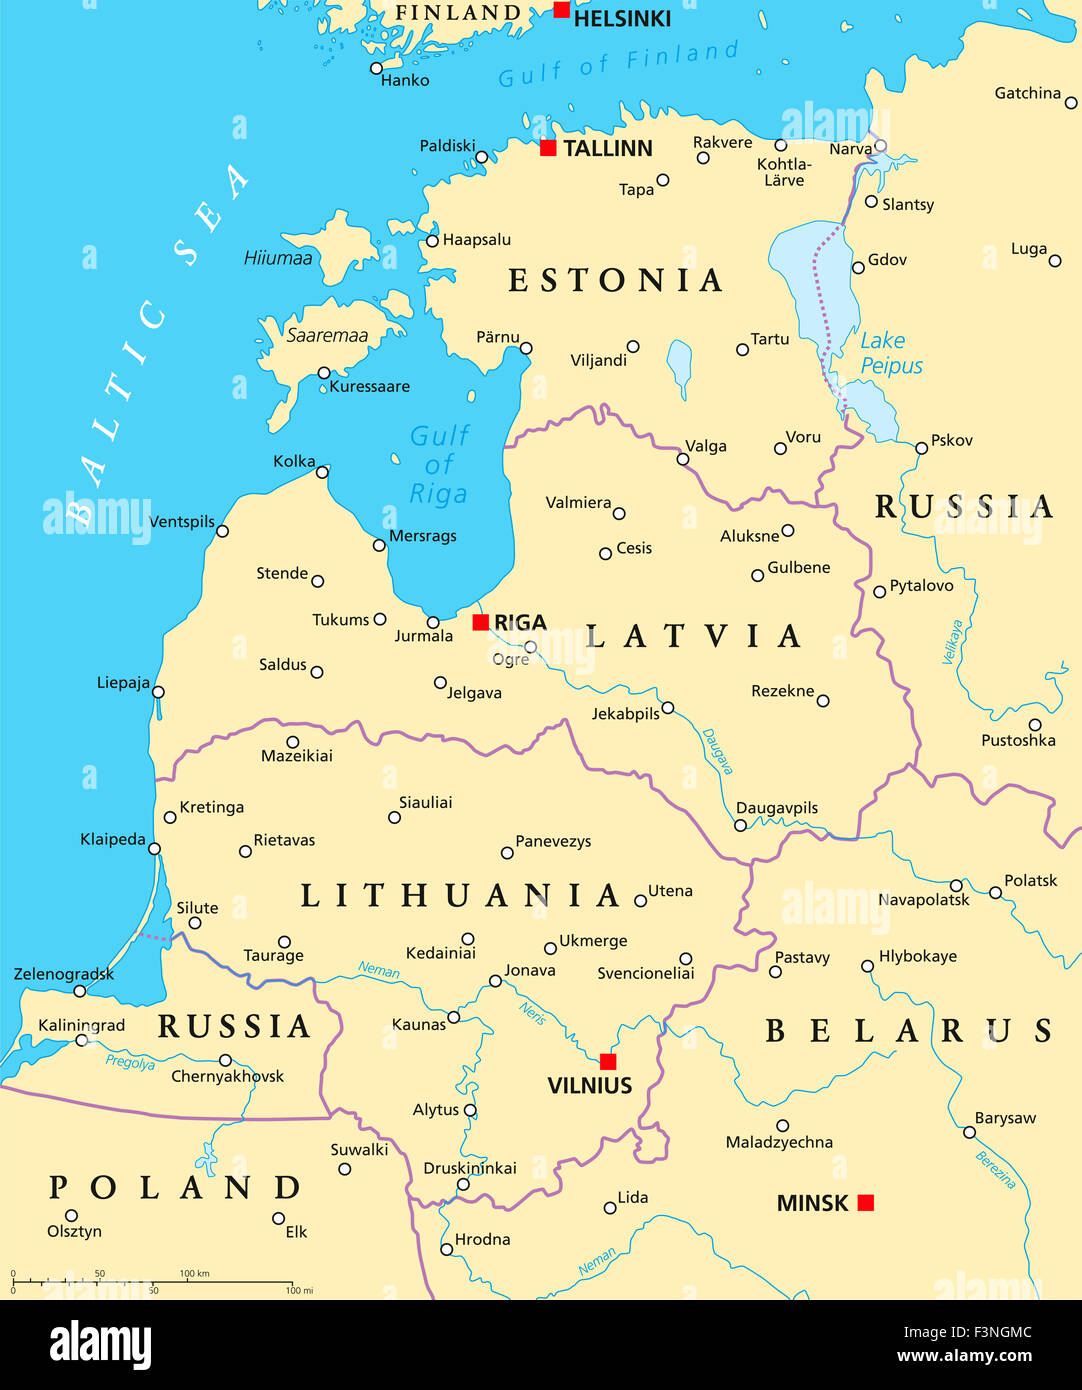 Carte politique des pays baltes. États baltes avec les capitales, les frontières nationales, d'importantes villes, rivières et lacs. Banque D'Images